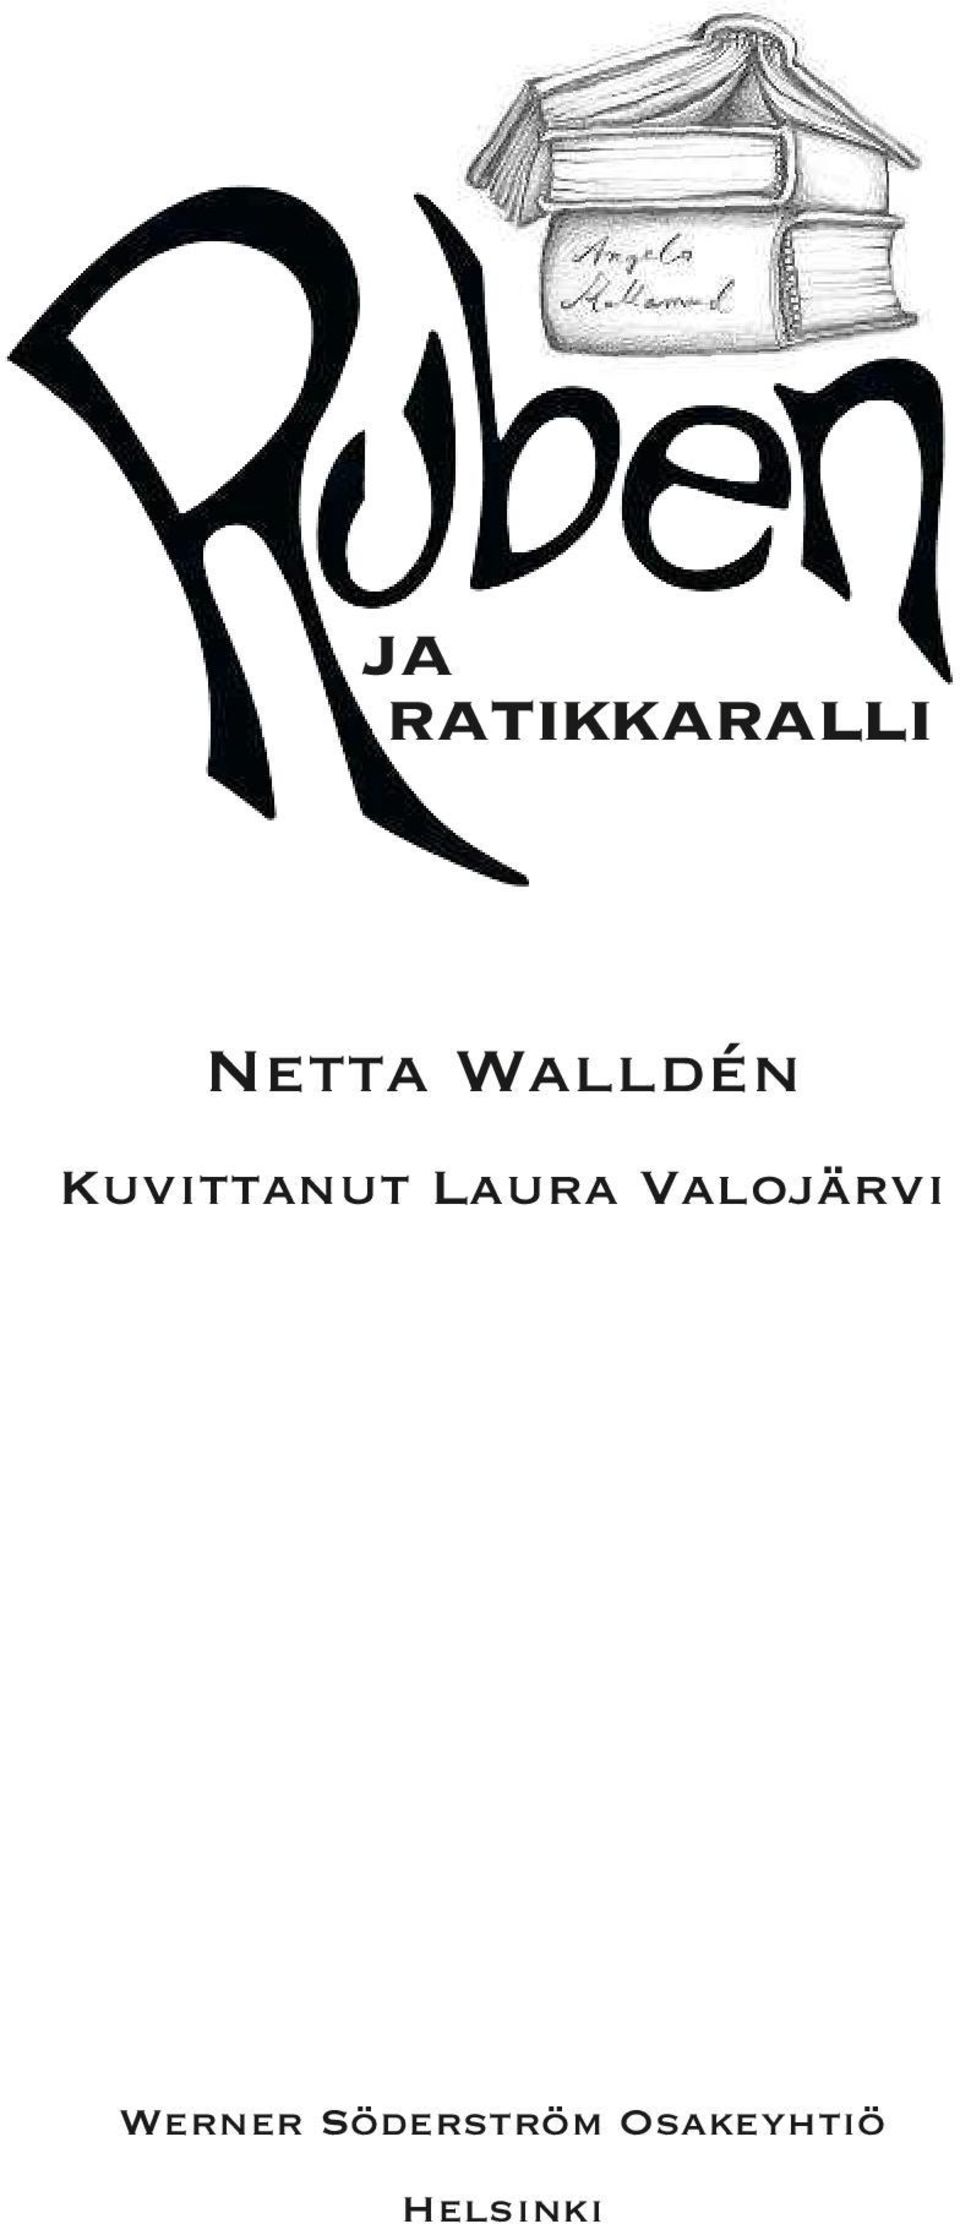 Laura Valojärvi Werner